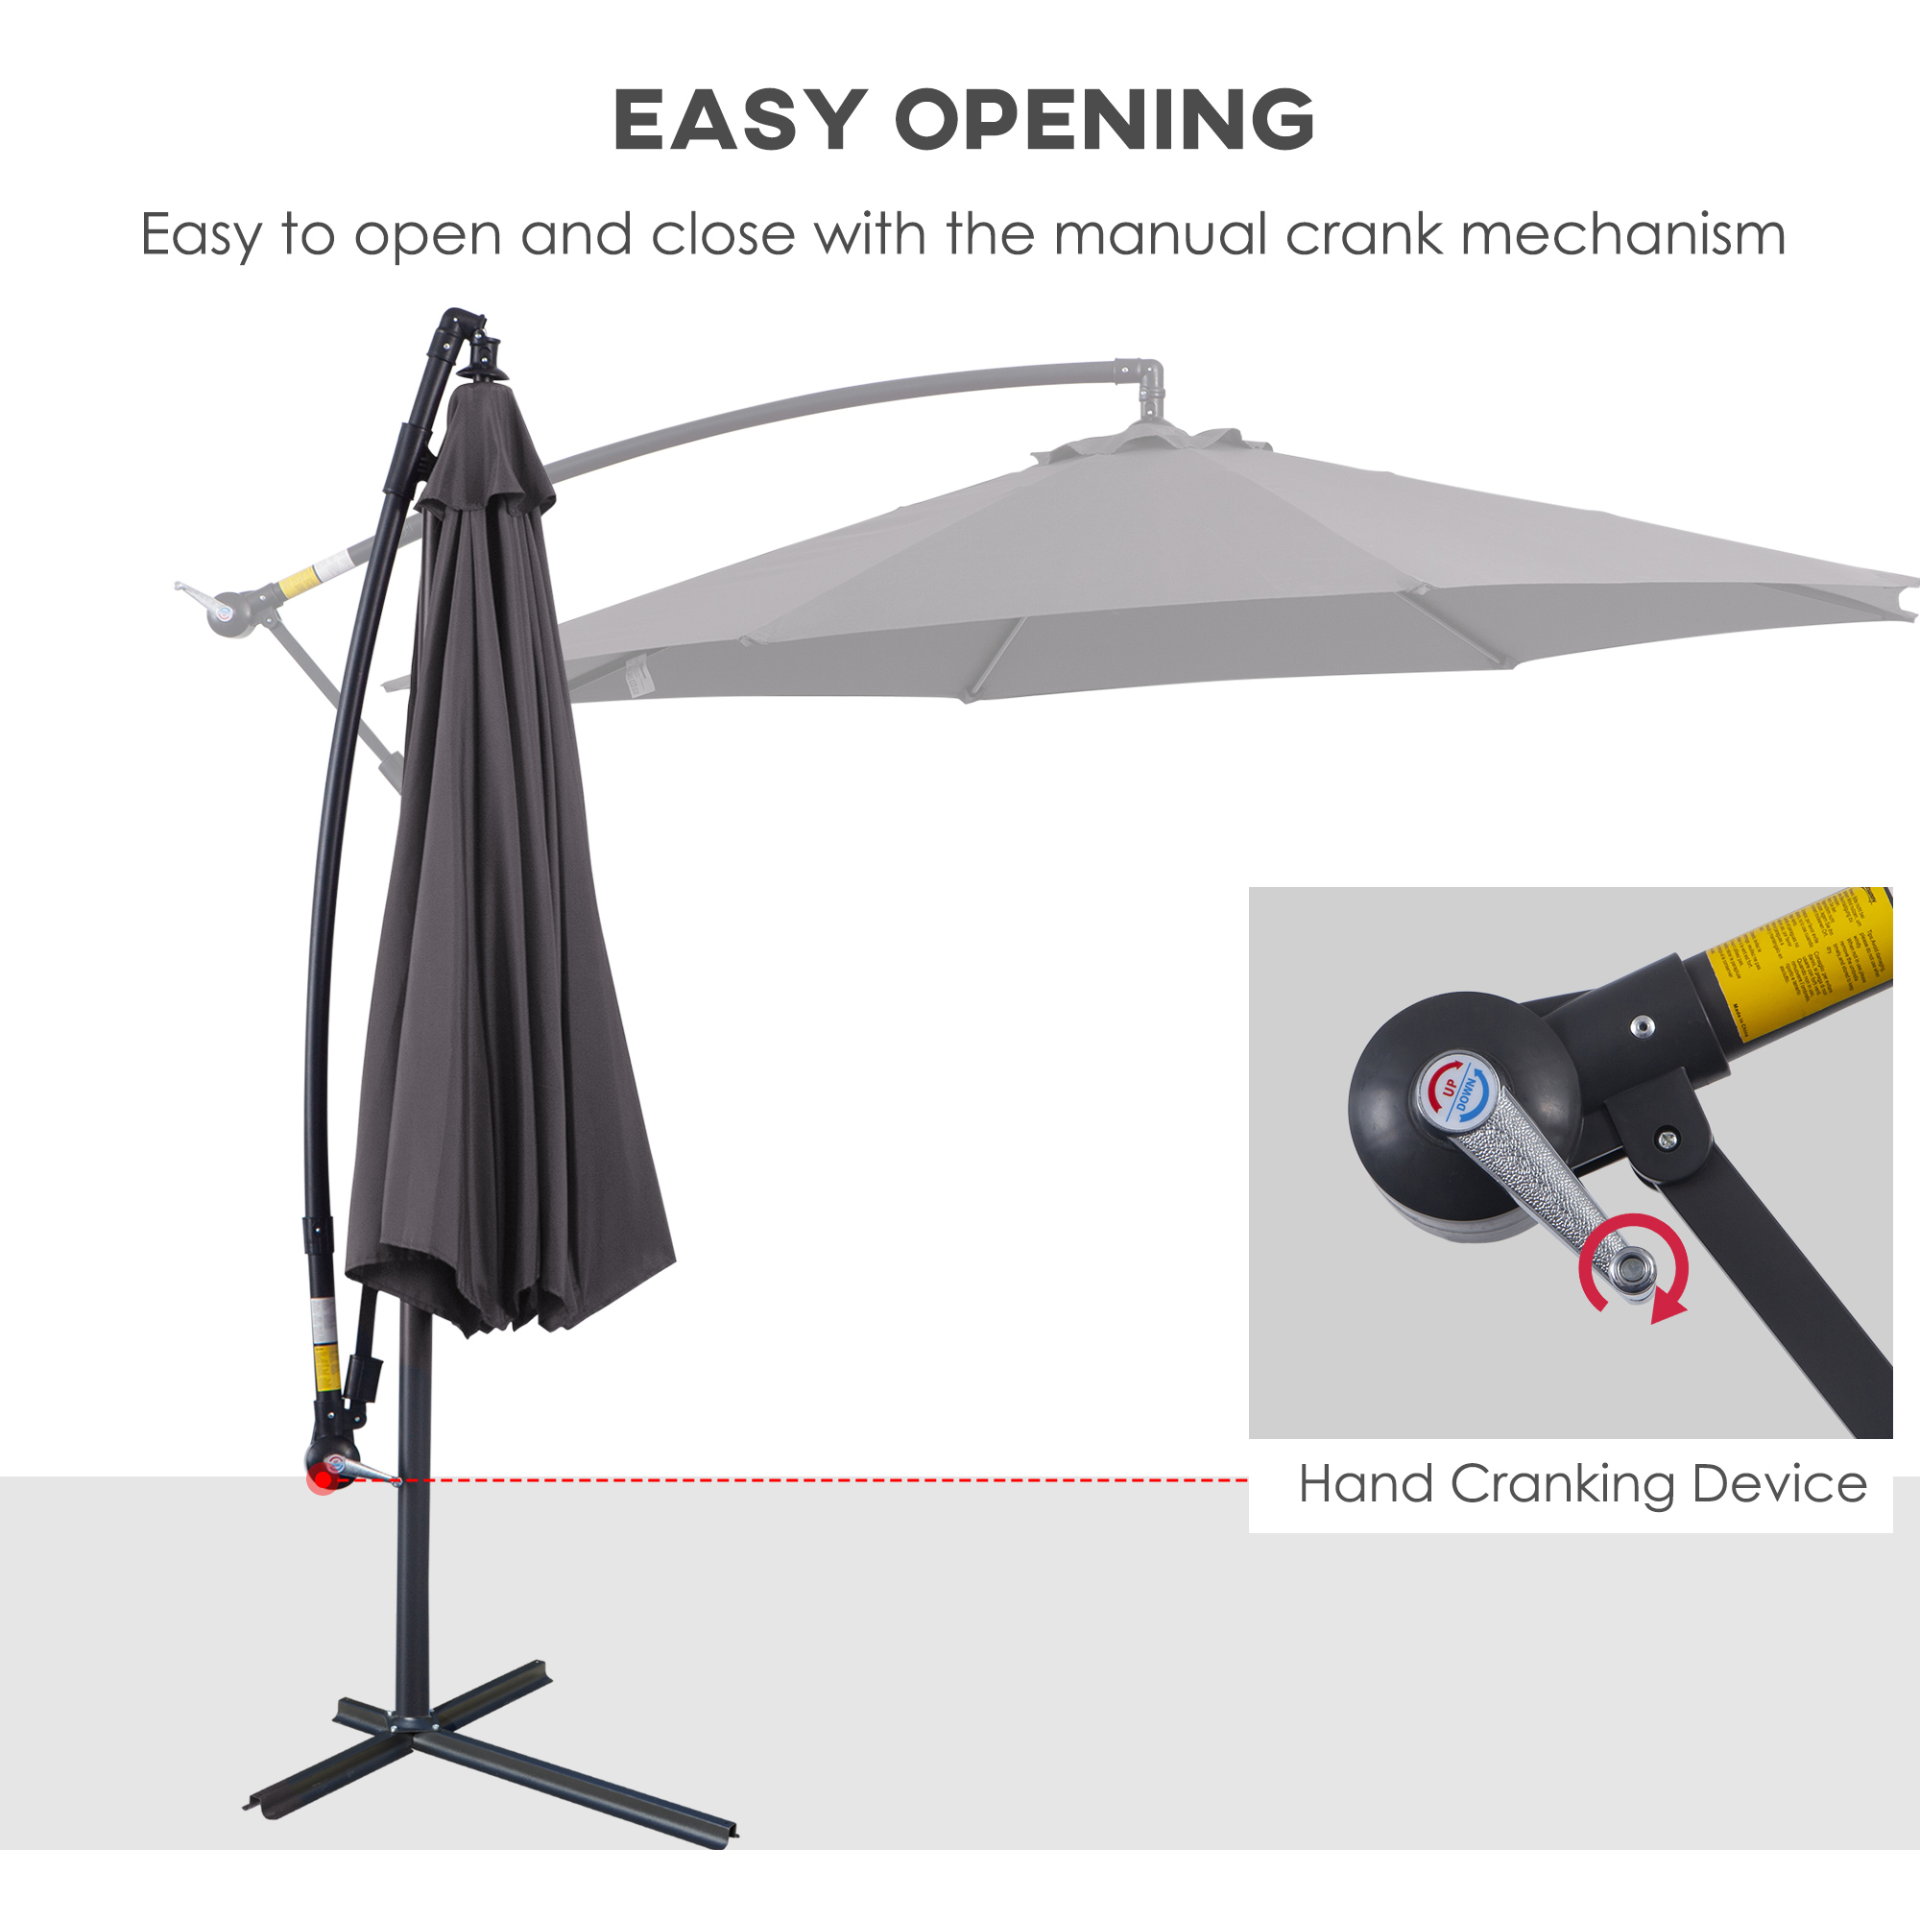 Outsunny 3(m) Garden Banana Parasol Hanging Cantilever Umbrella with Crank Handle, 8 Ribs and Cross Base for Outdoor, Sun Shade, Grey